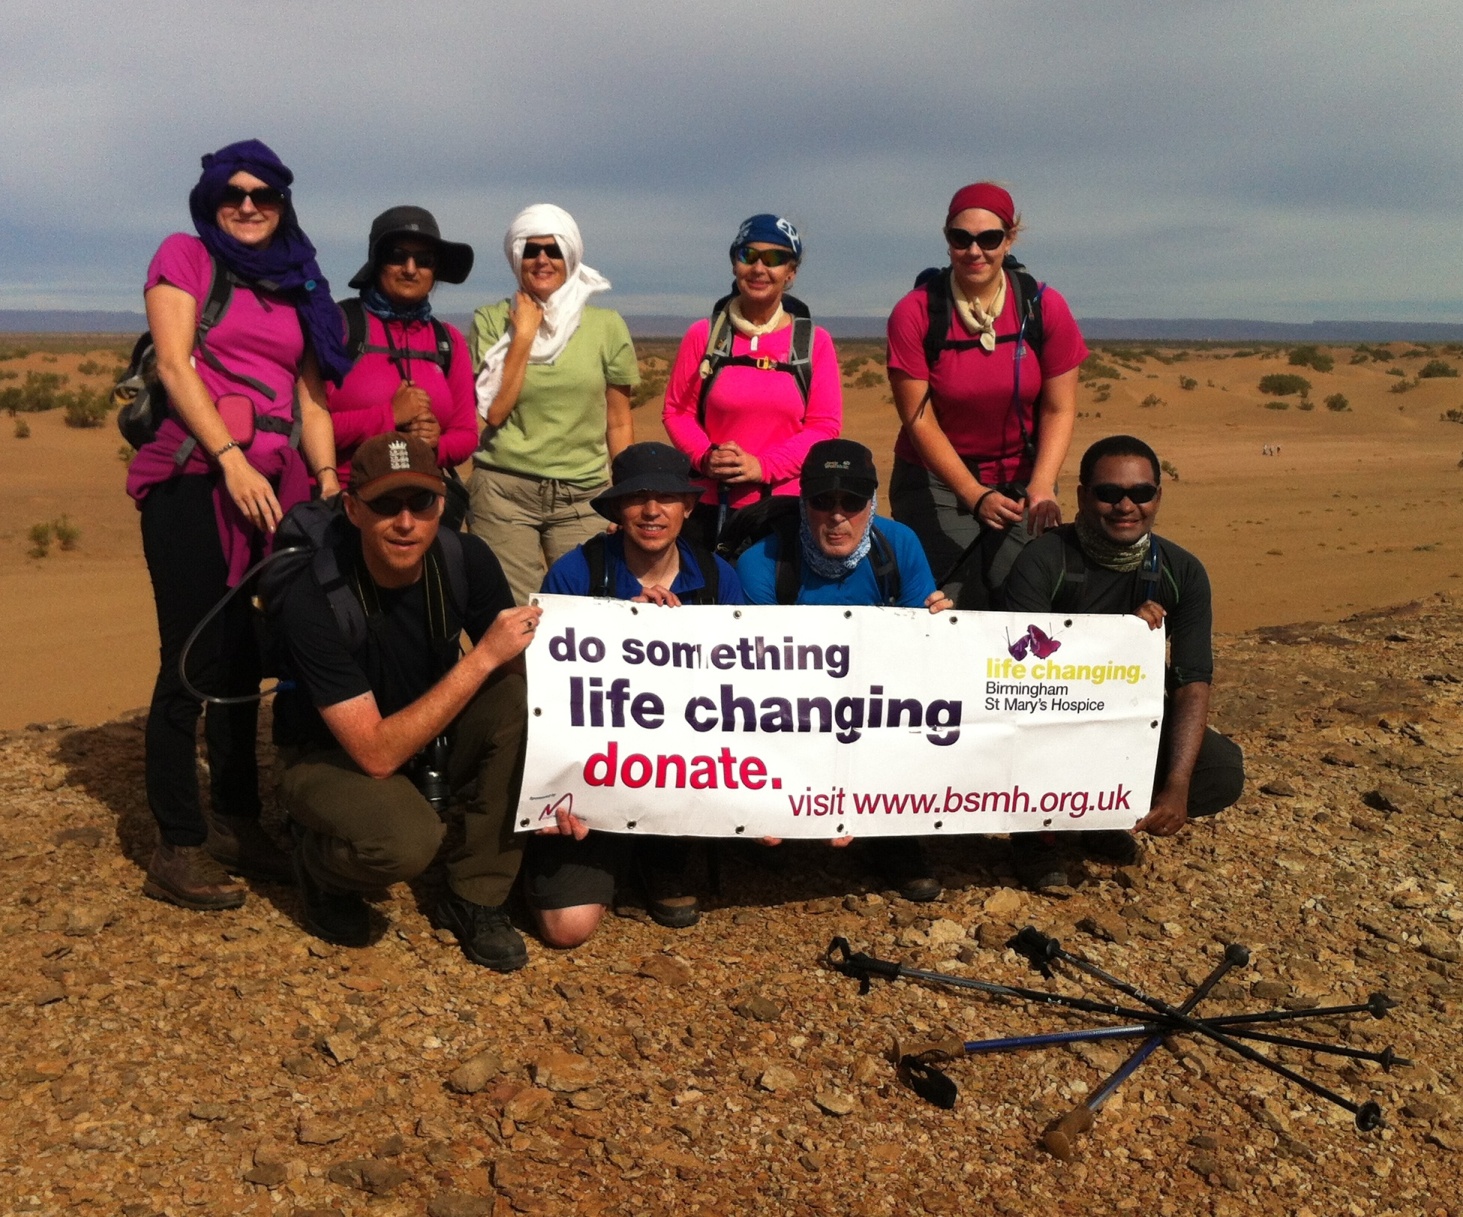 A team of trekkers raising money for Birmingham St Mary's Hospice in the Sahara desert in 2012